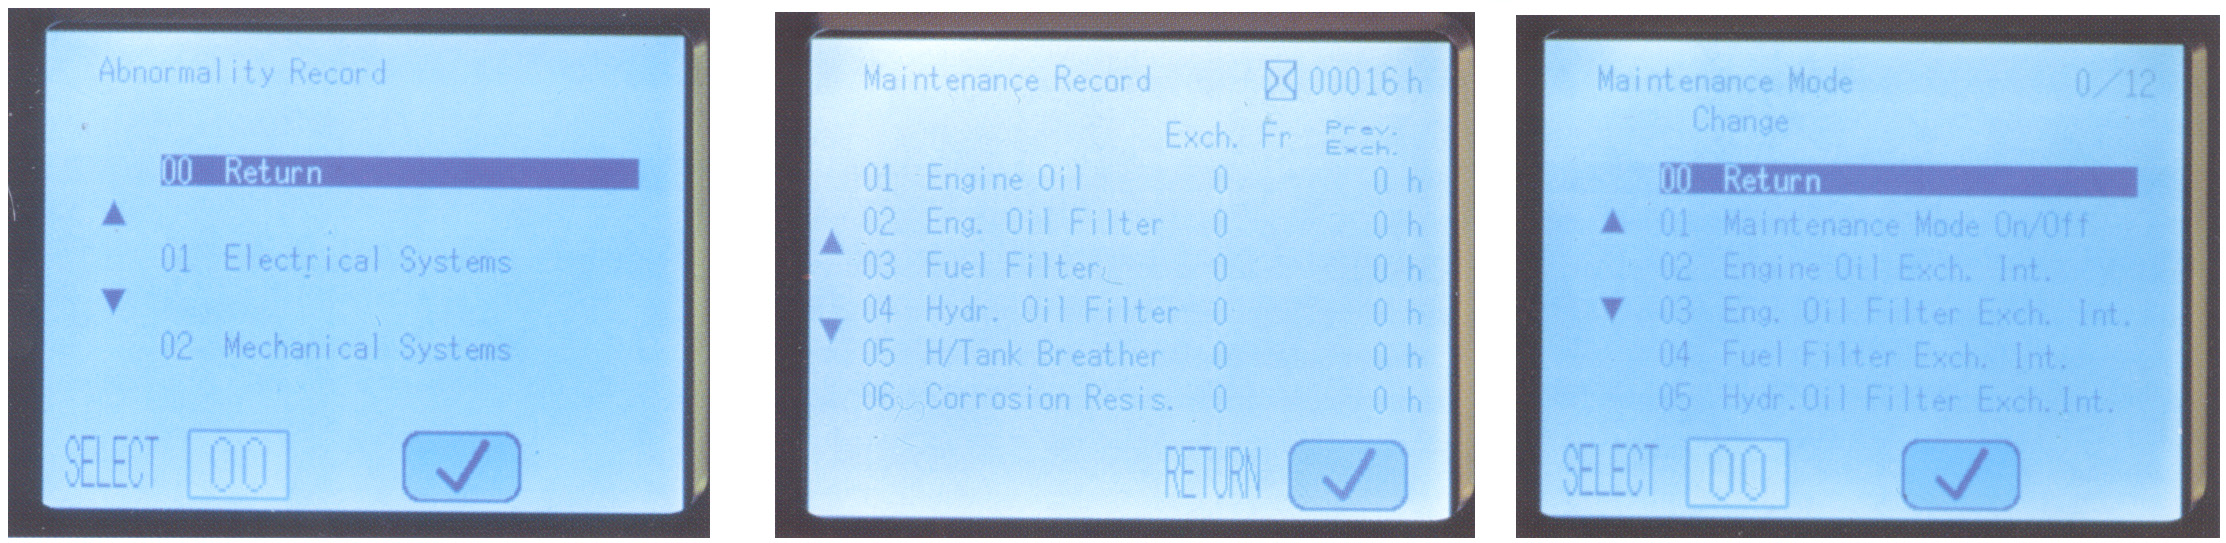 PC210-7 SNI OVÁNÍ NÁKLADÙ NA ÚDR BU Prodlou ené intervaly výmìny motorového oleje a filtru Nové vysoce výkonné filtry jsou pou ity v motoru a hydraulických okruzích.